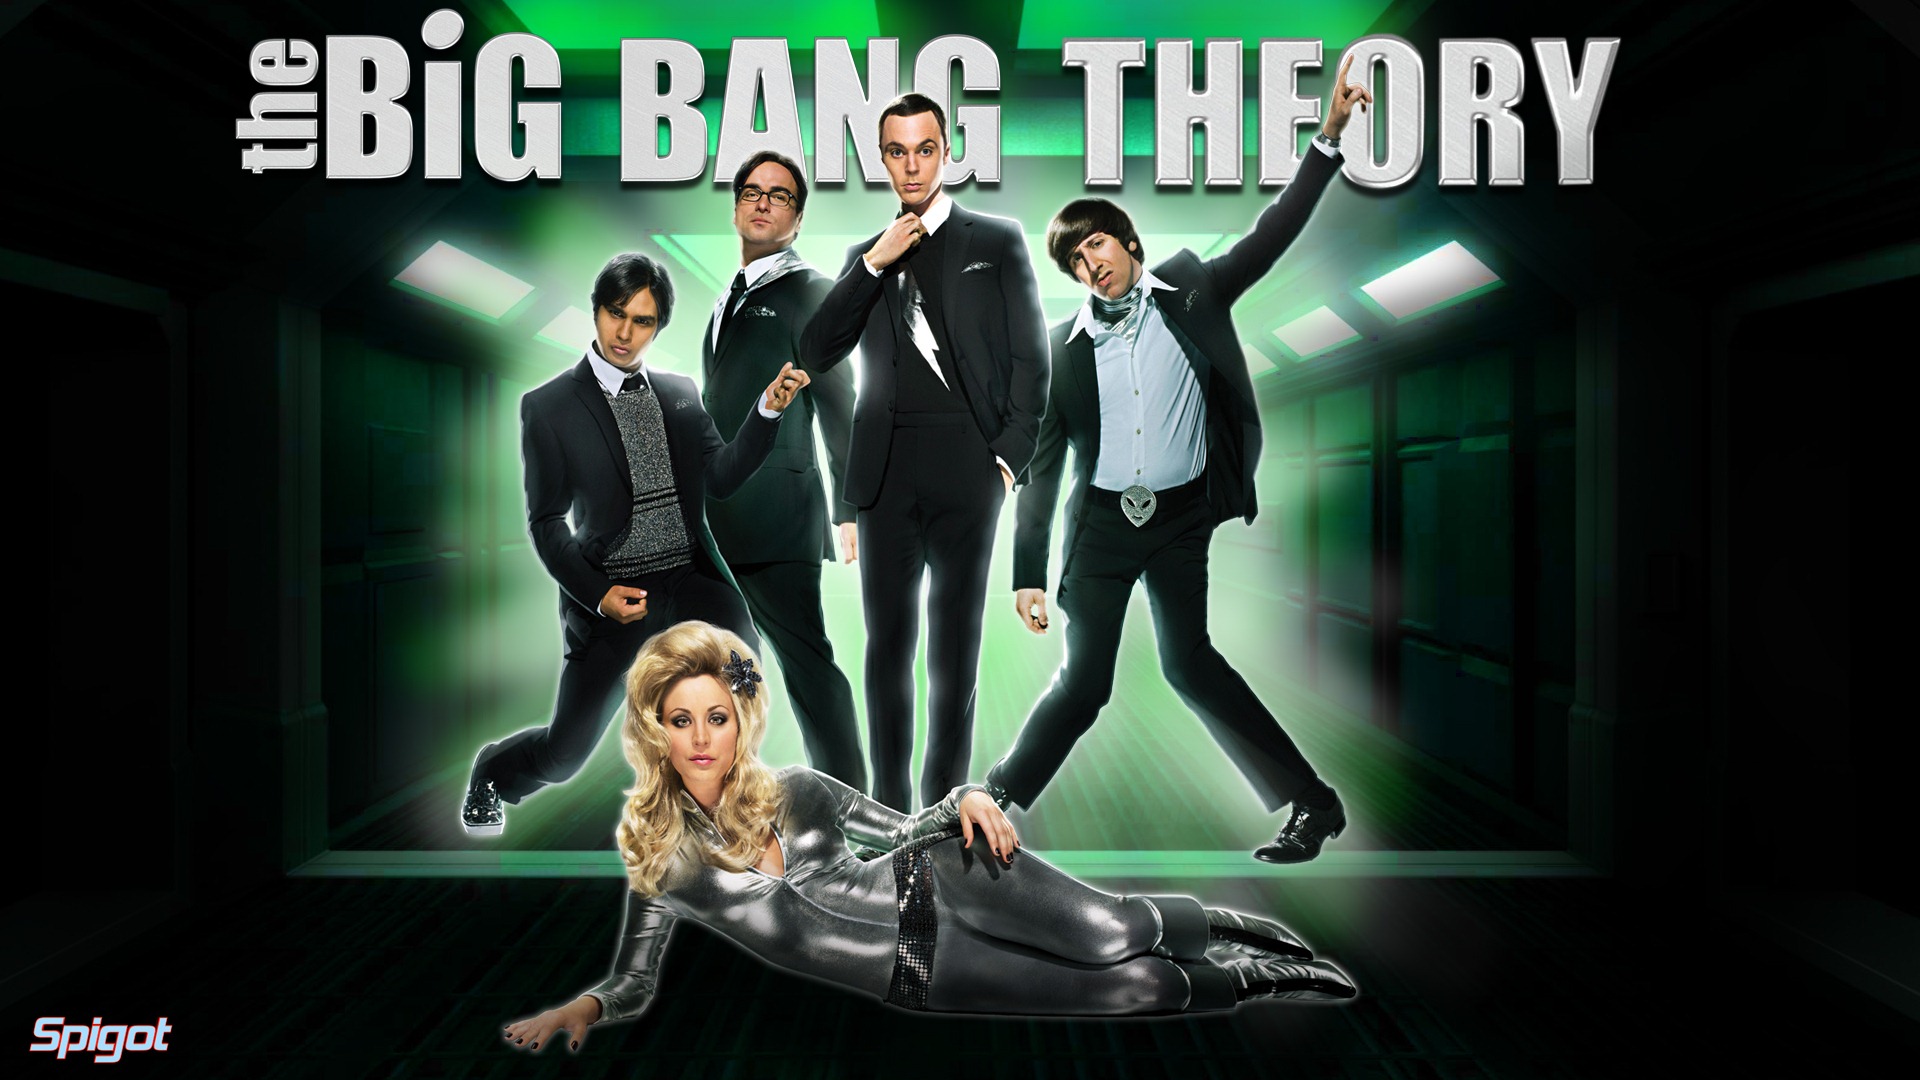 The Big Bang Theory 生活大爆炸 电视剧高清壁纸6 - 1920x1080